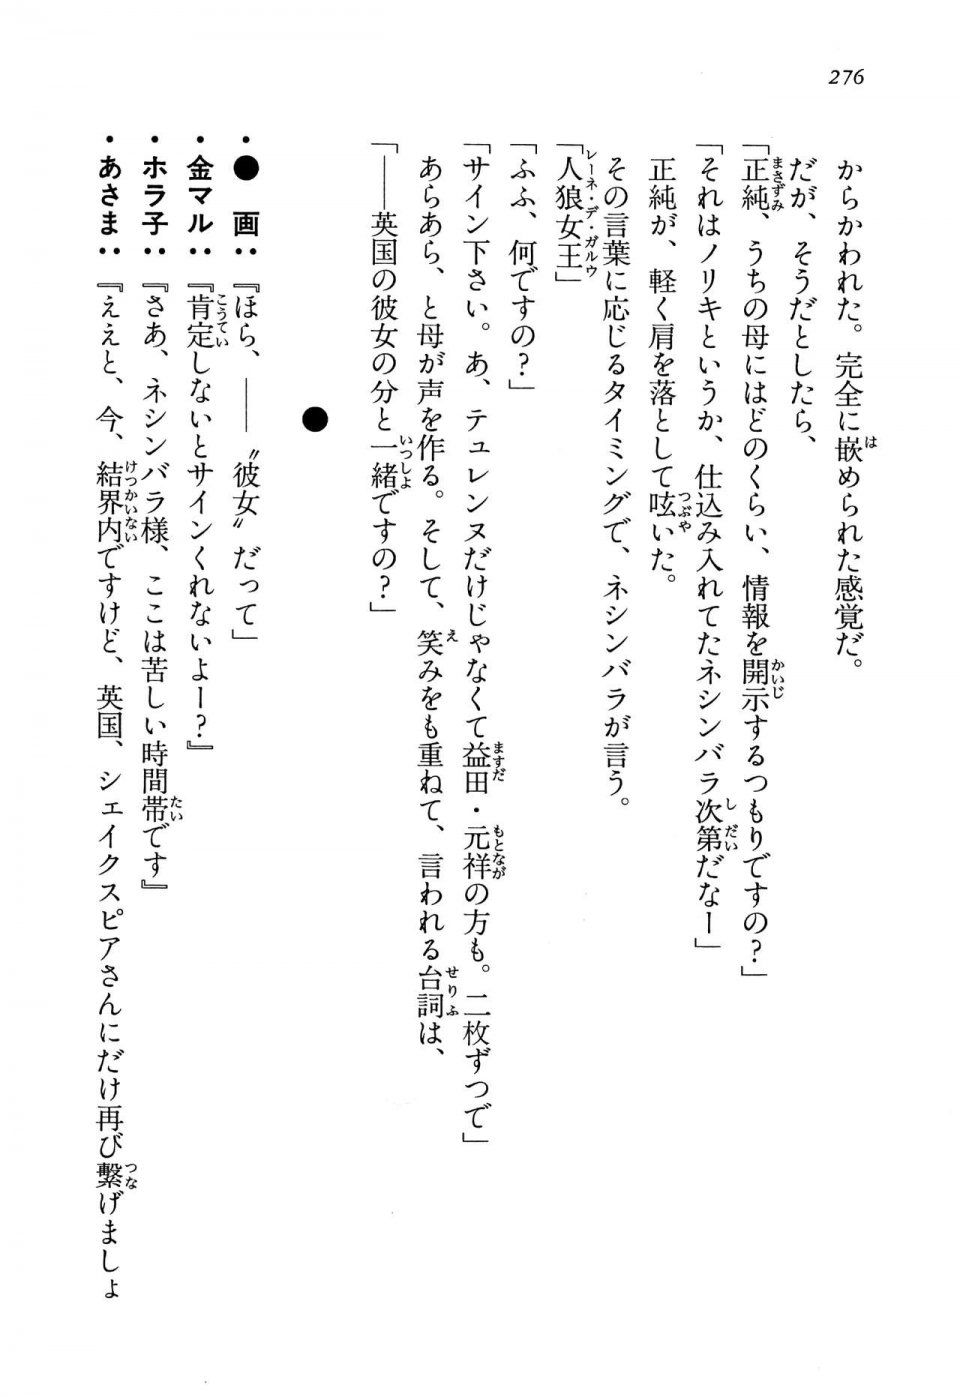 Kyoukai Senjou no Horizon LN Vol 13(6A) - Photo #276